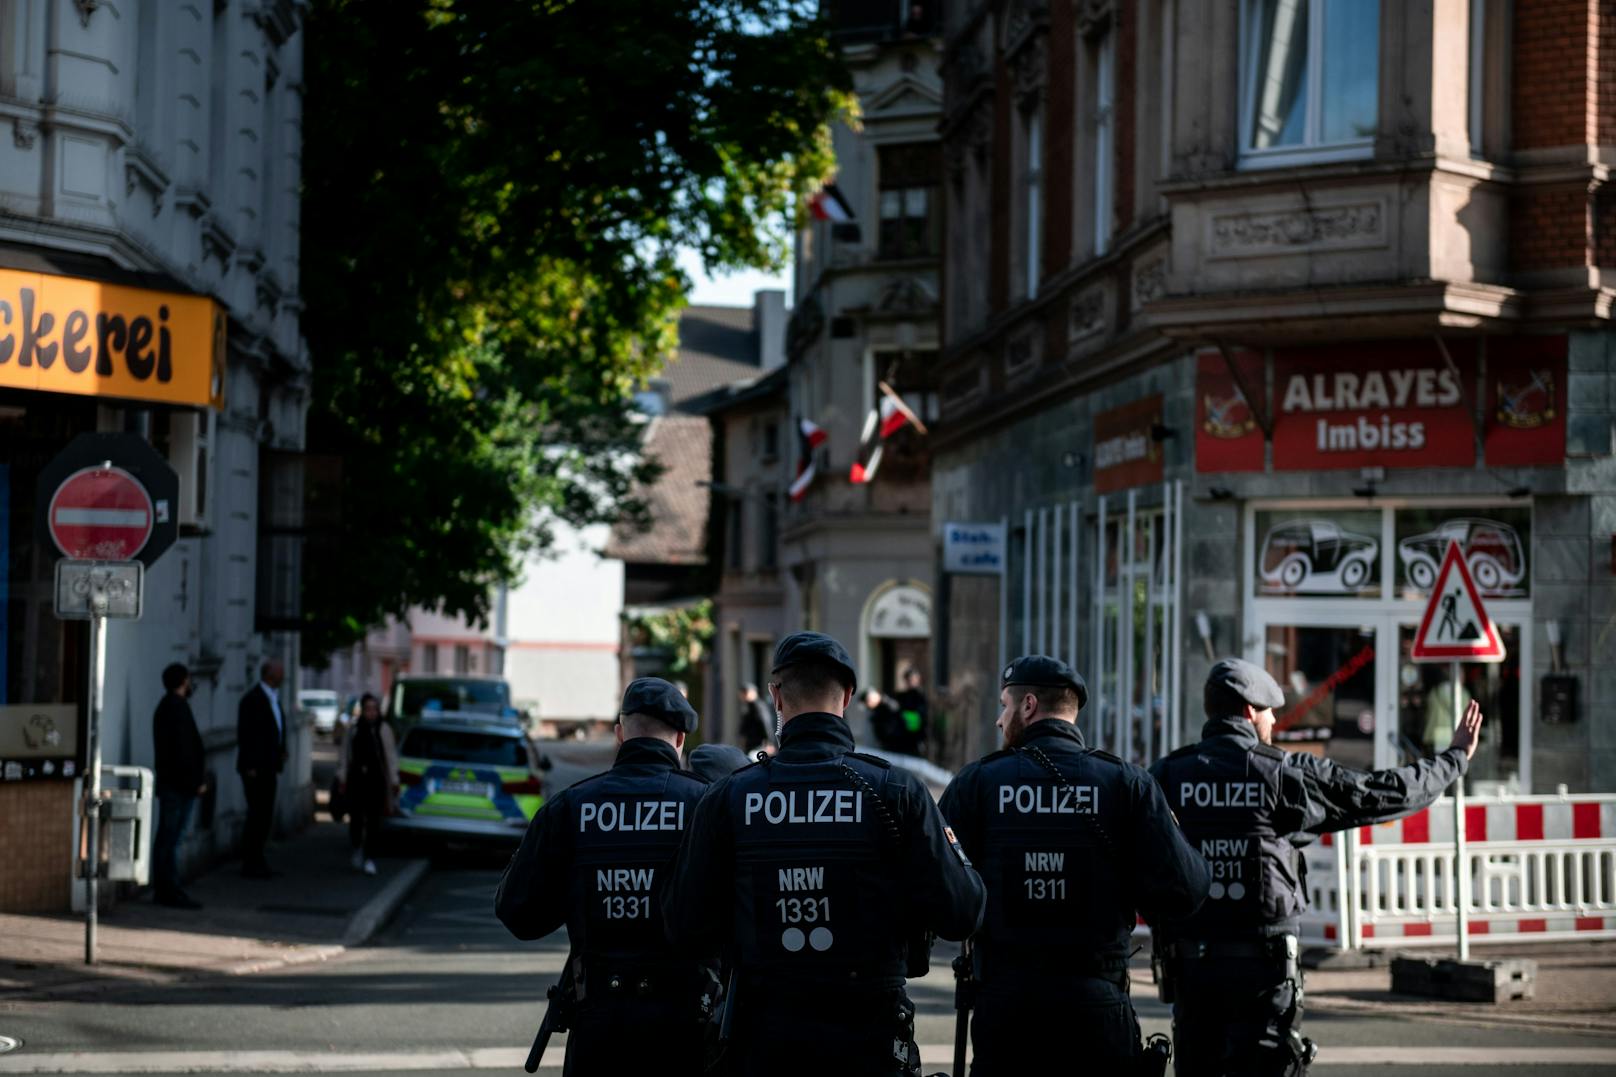 Polizei erschießt 16-Jährigen bei Einsatz in Dortmund